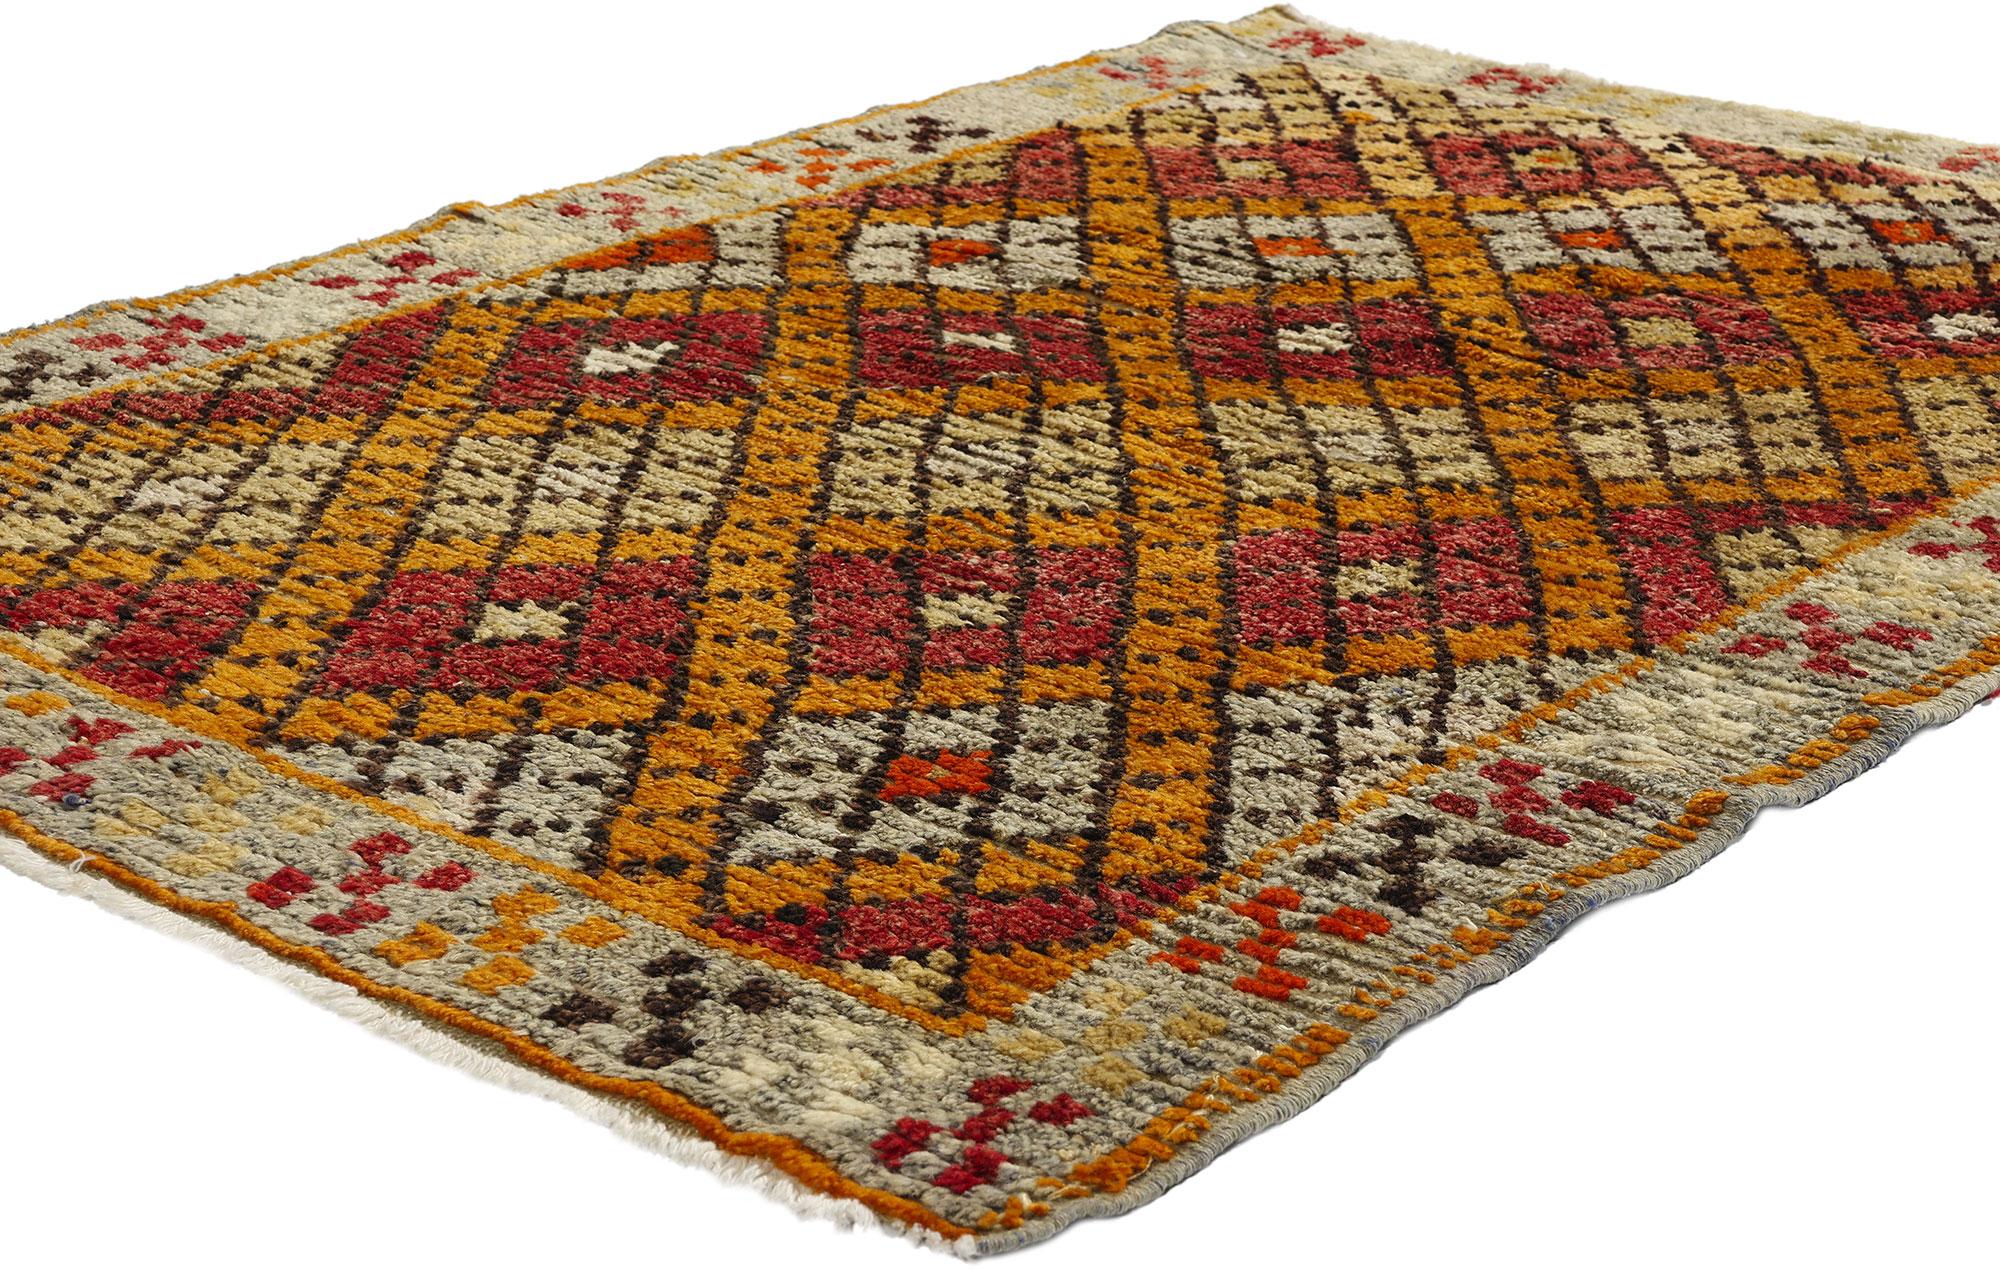 53924 Vintage Turkish Oushak Rug, 03'04 x 04'10. Die türkischen Oushak-Teppiche, die aus der westlichen Region Oushak in der Türkei stammen, werden wegen ihrer komplizierten Designs, ihrer sanften Farbpalette und ihrer hochwertigen MATERIALIEN aus